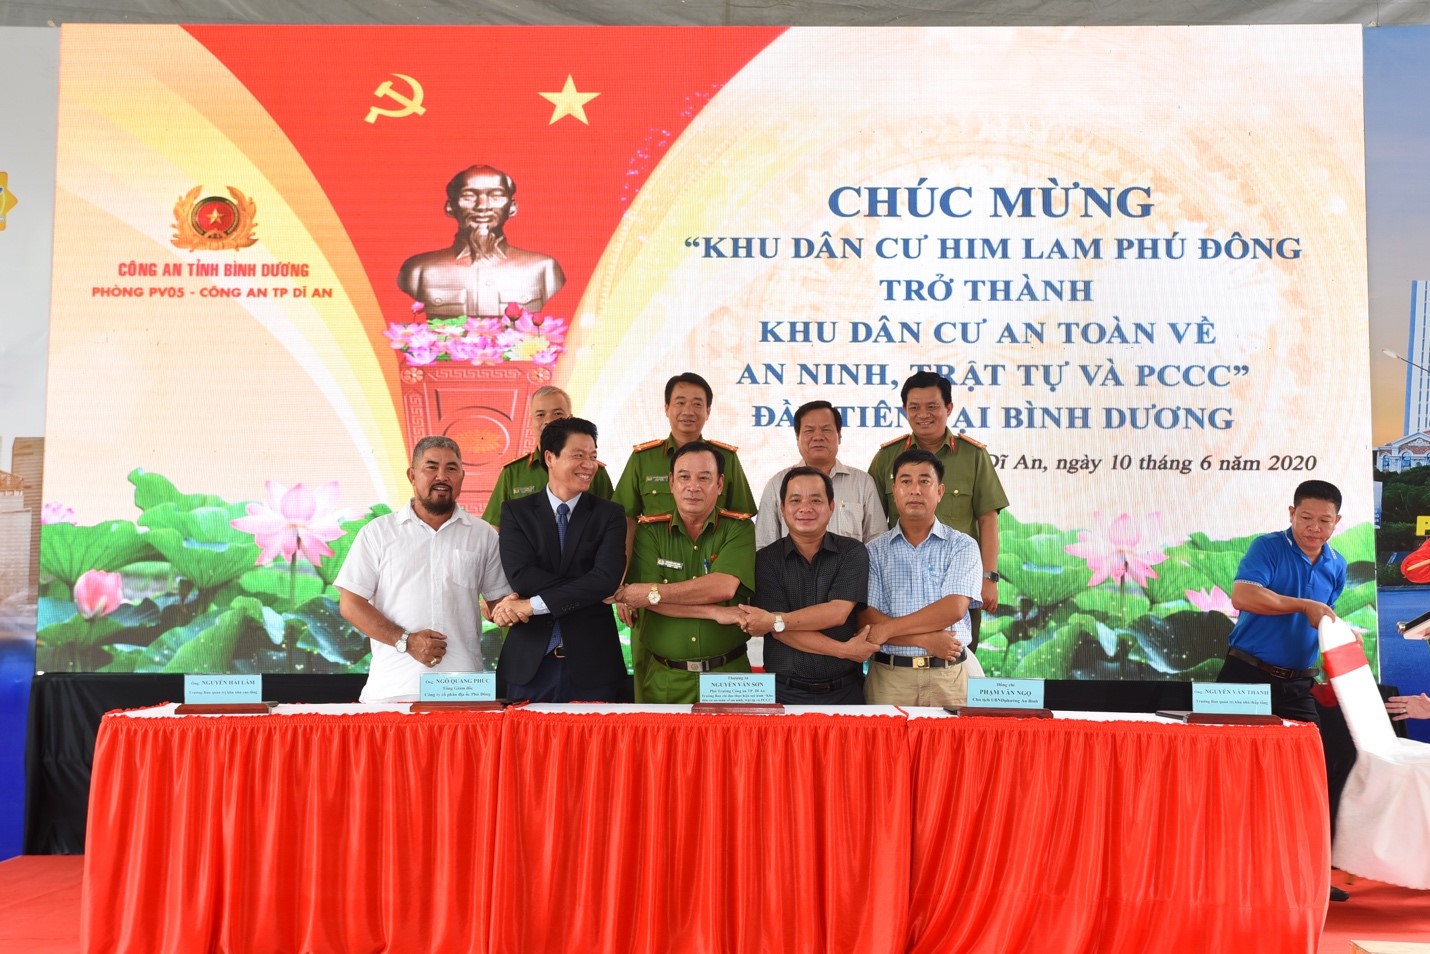 Hành trình xây dựng cộng đồng văn minh của Phú Đông Group nhận được sự ghi nhận từ chính quyền địa phương.